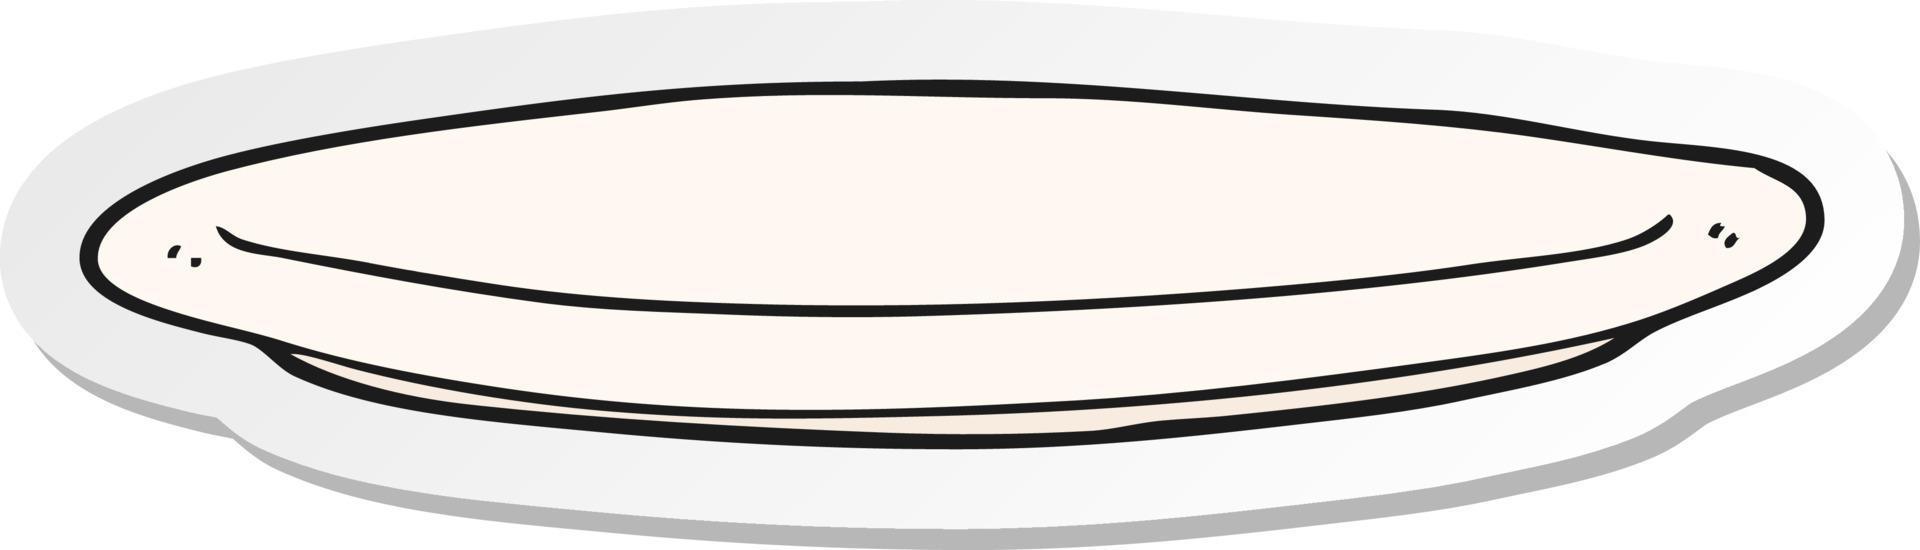 sticker of a cartoon plate vector